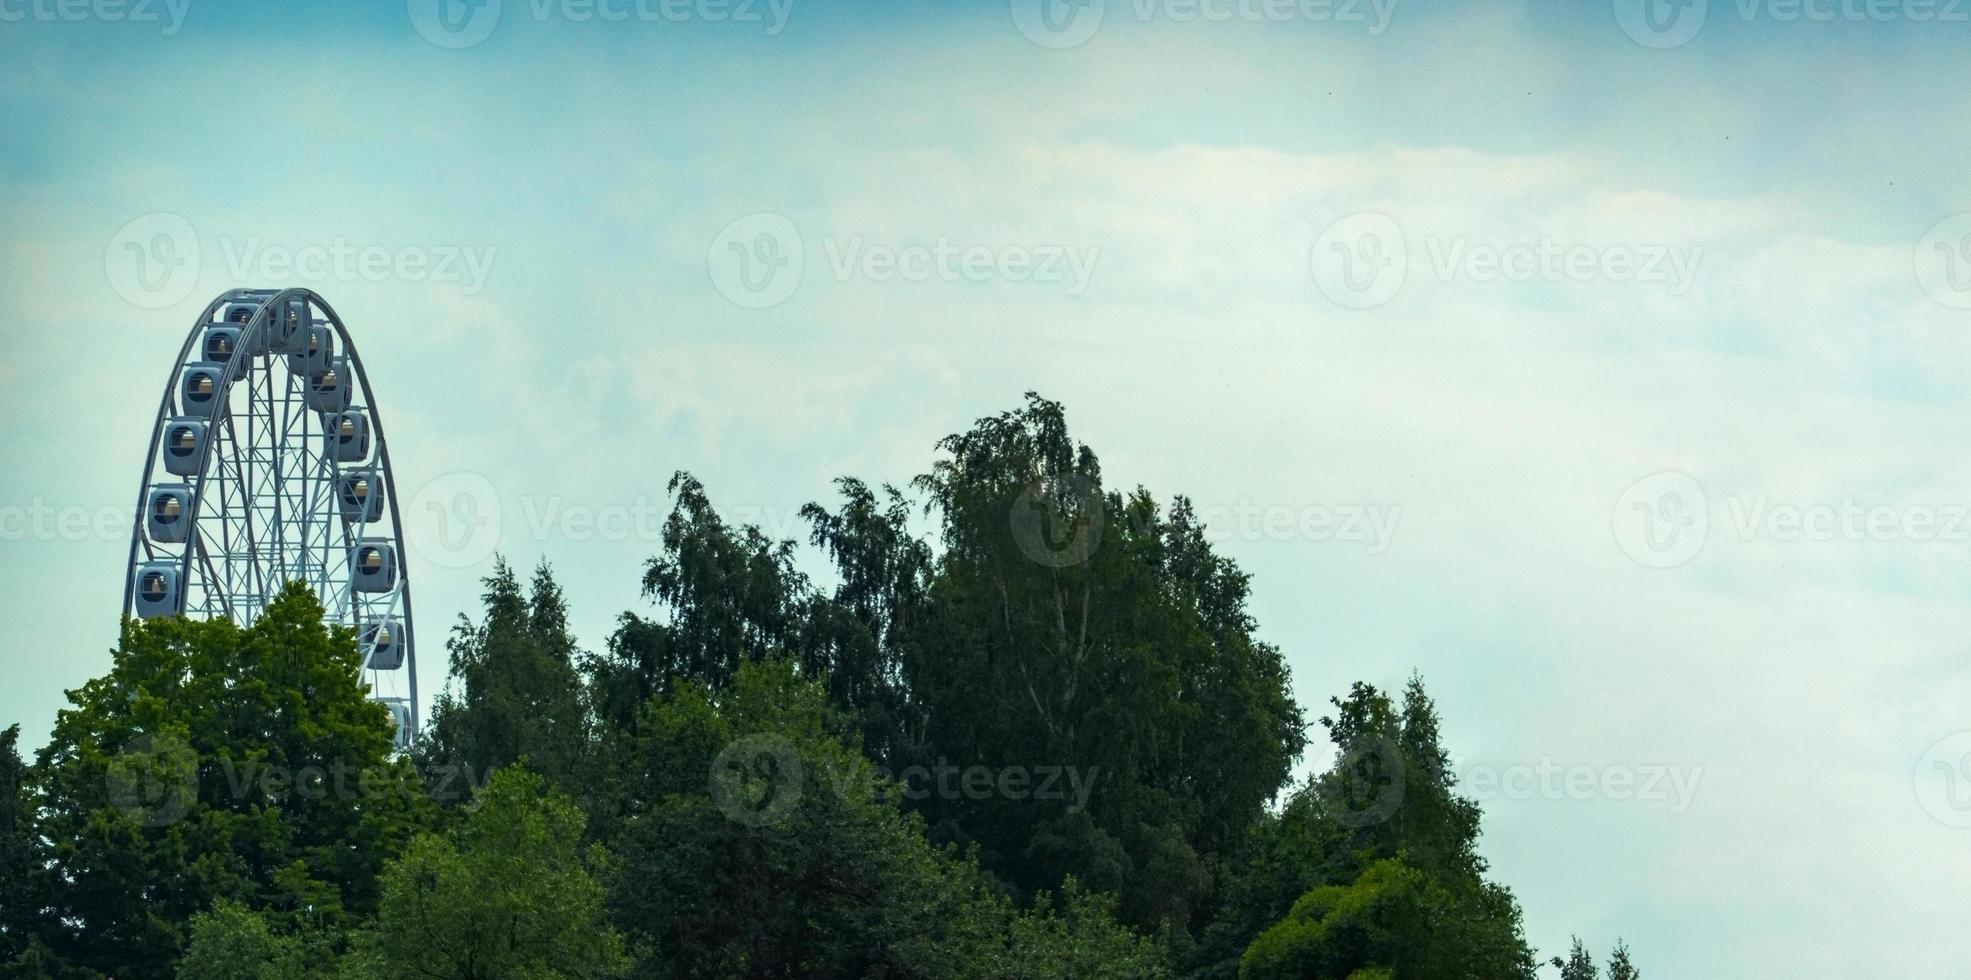 paisaje de un parque de diversiones con la parte superior de una rueda de la fortuna que se muestra sobre las copas de los árboles contra un cielo azul. foto